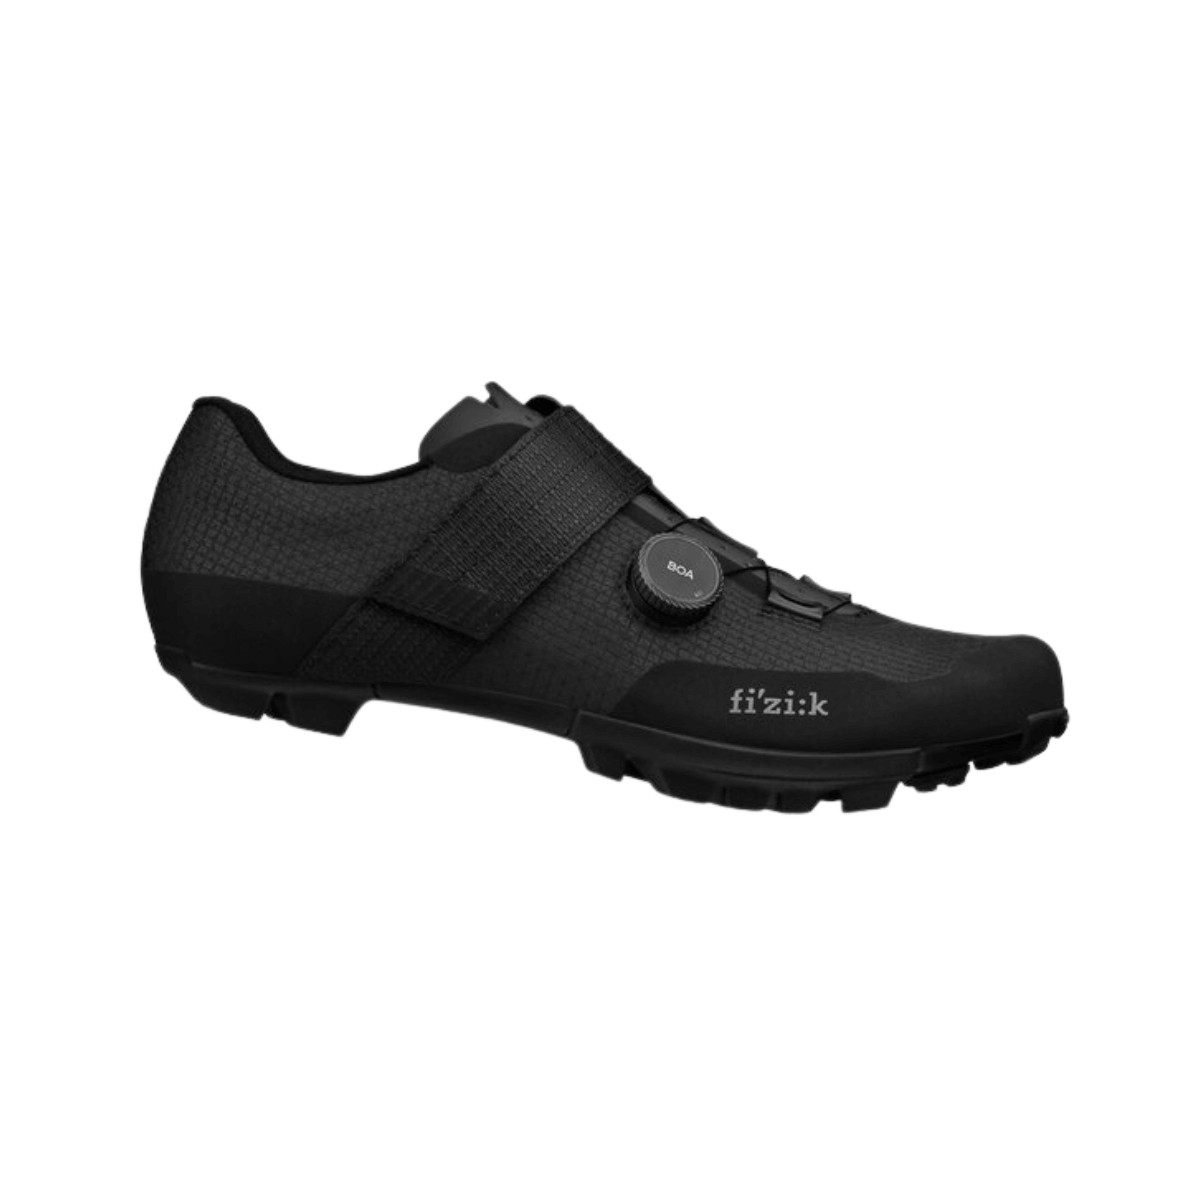 Shoes Fizik Vento Ferox Carbon Black, Size 41 - EUR